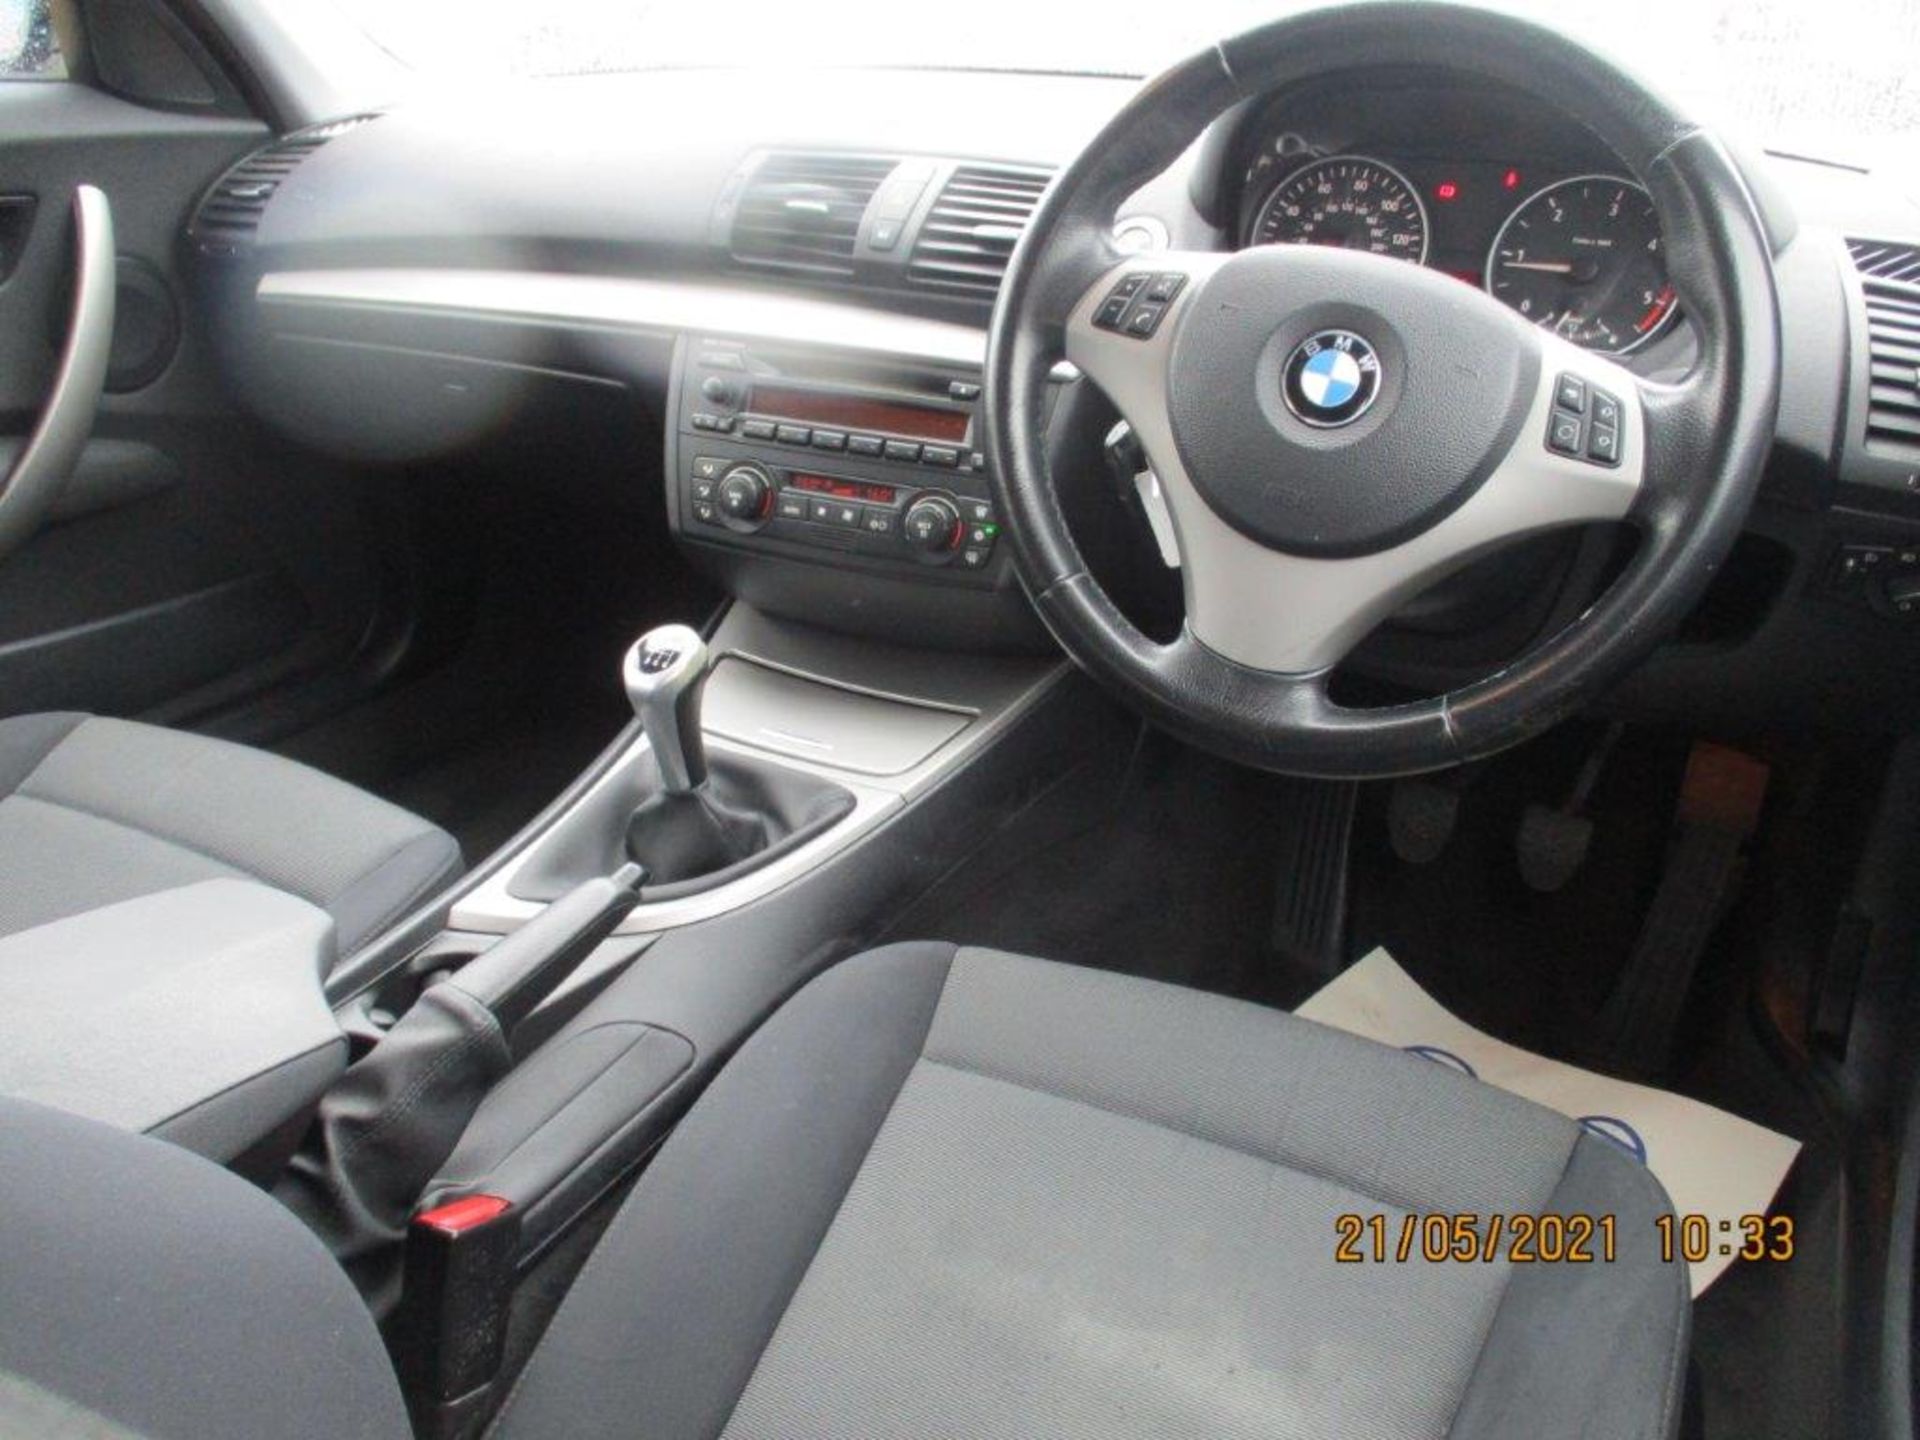 06 06 BMW 120D SE - Image 8 of 25